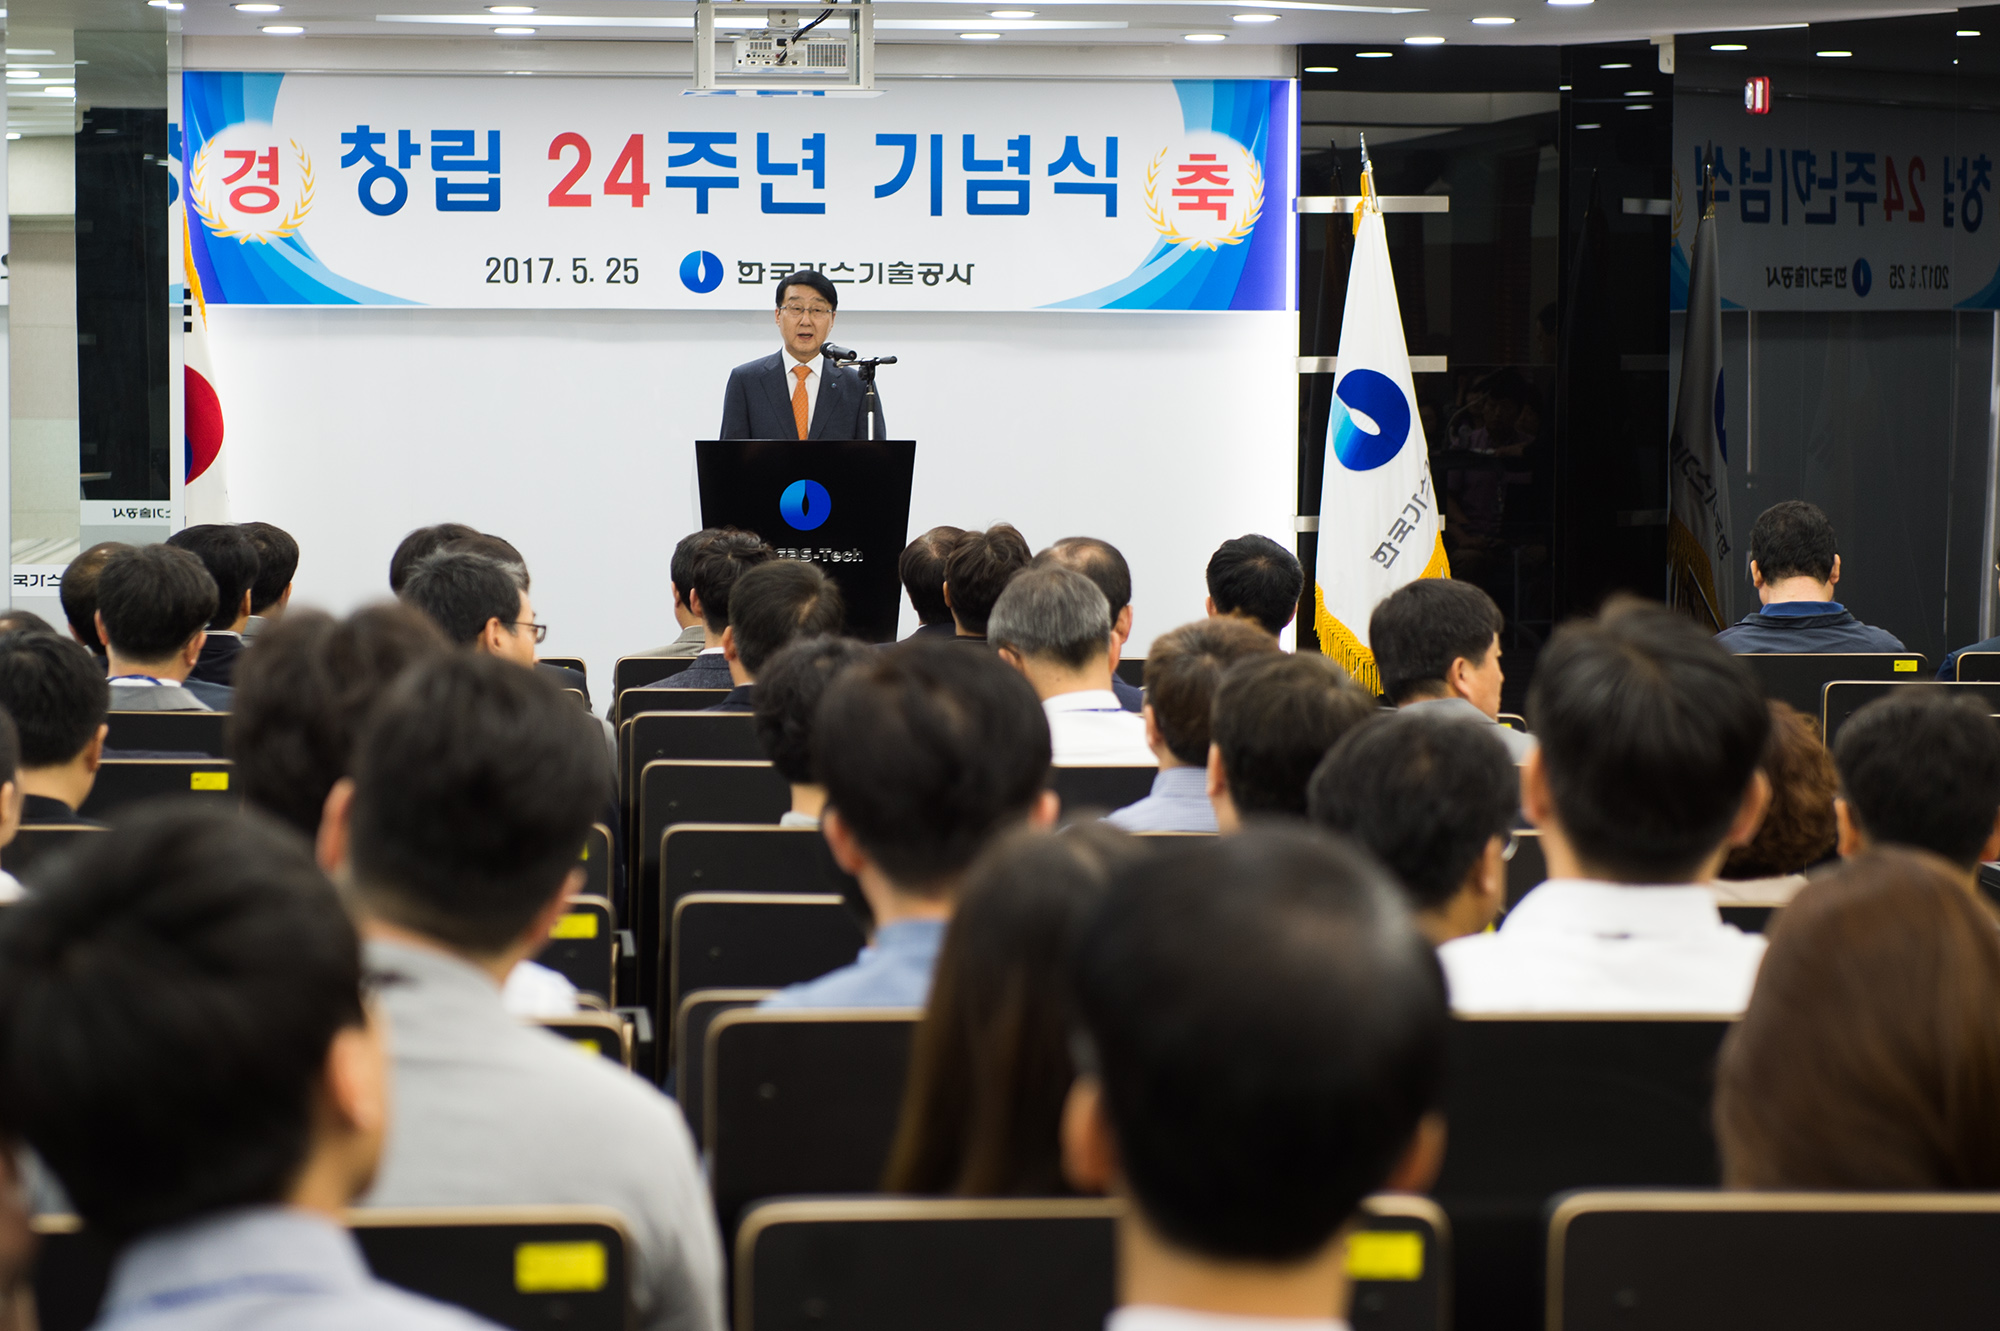 창립 제24주년 기념행사 개최